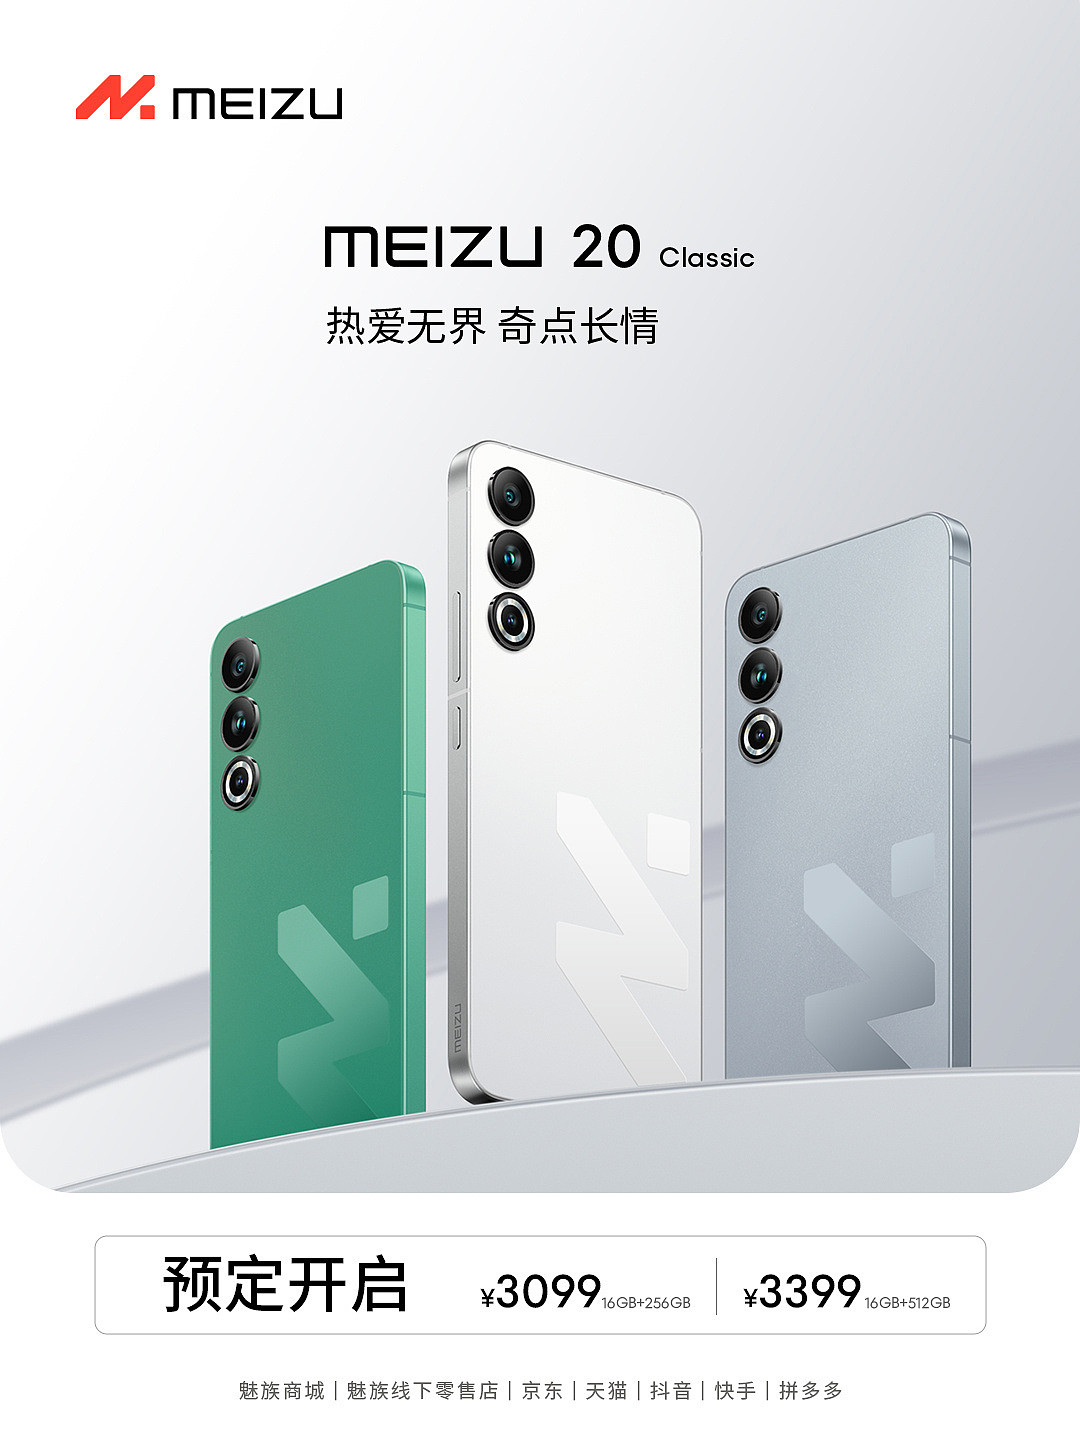 魅族 20 Classic 手机今晚开售：骁龙 8 Gen2 + 纯白机身，到手价 3029 元起 - 1